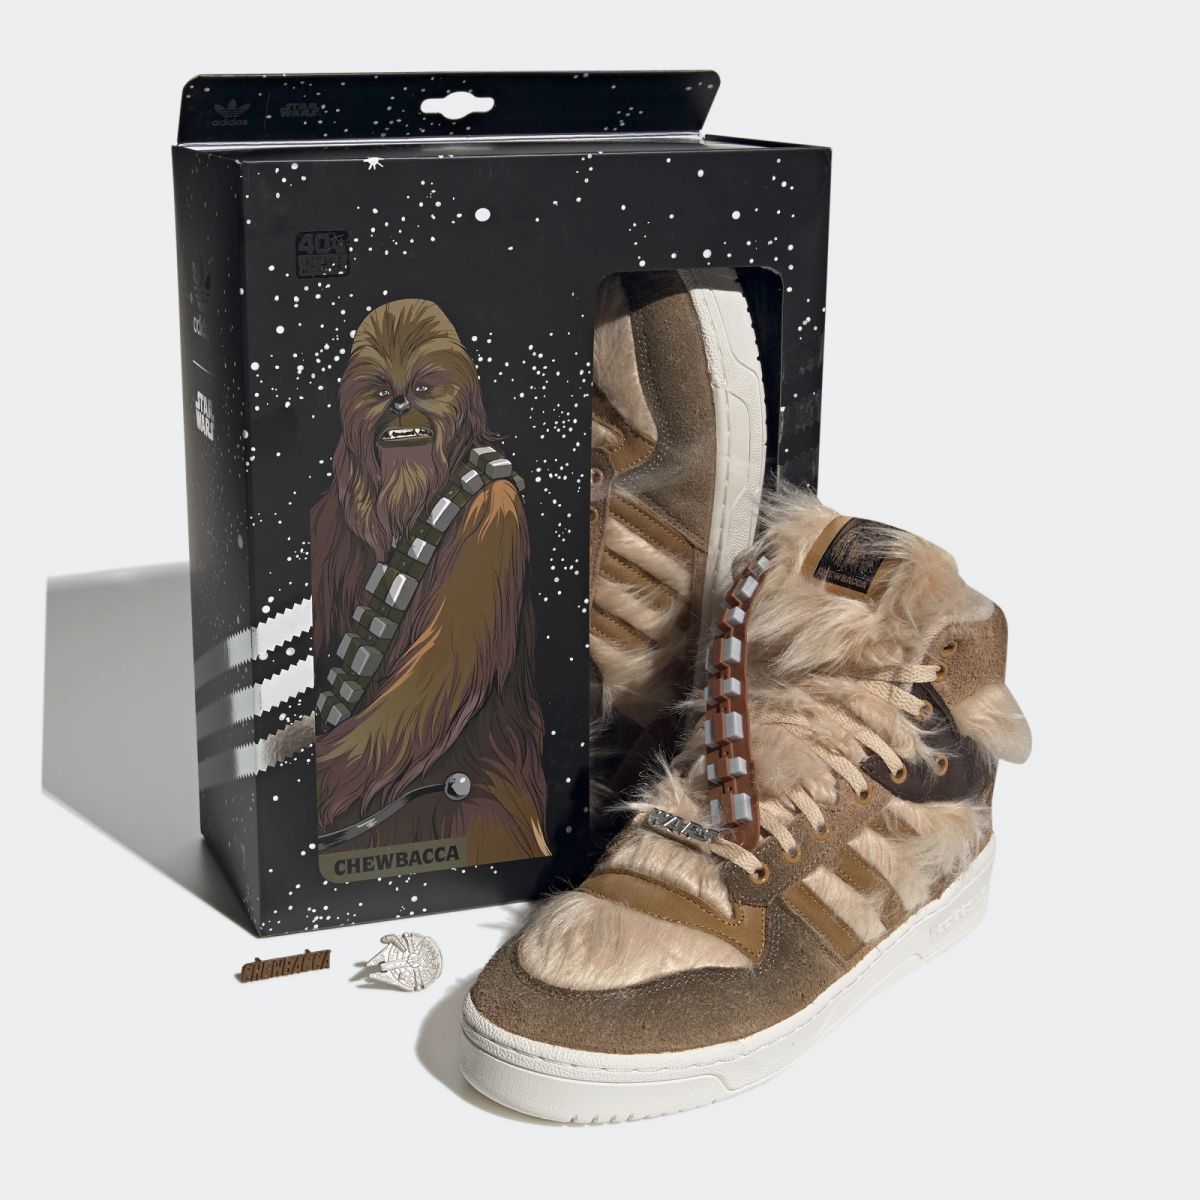 Adidas propose des baskets poilues à l’effigie de Chewbacca #5